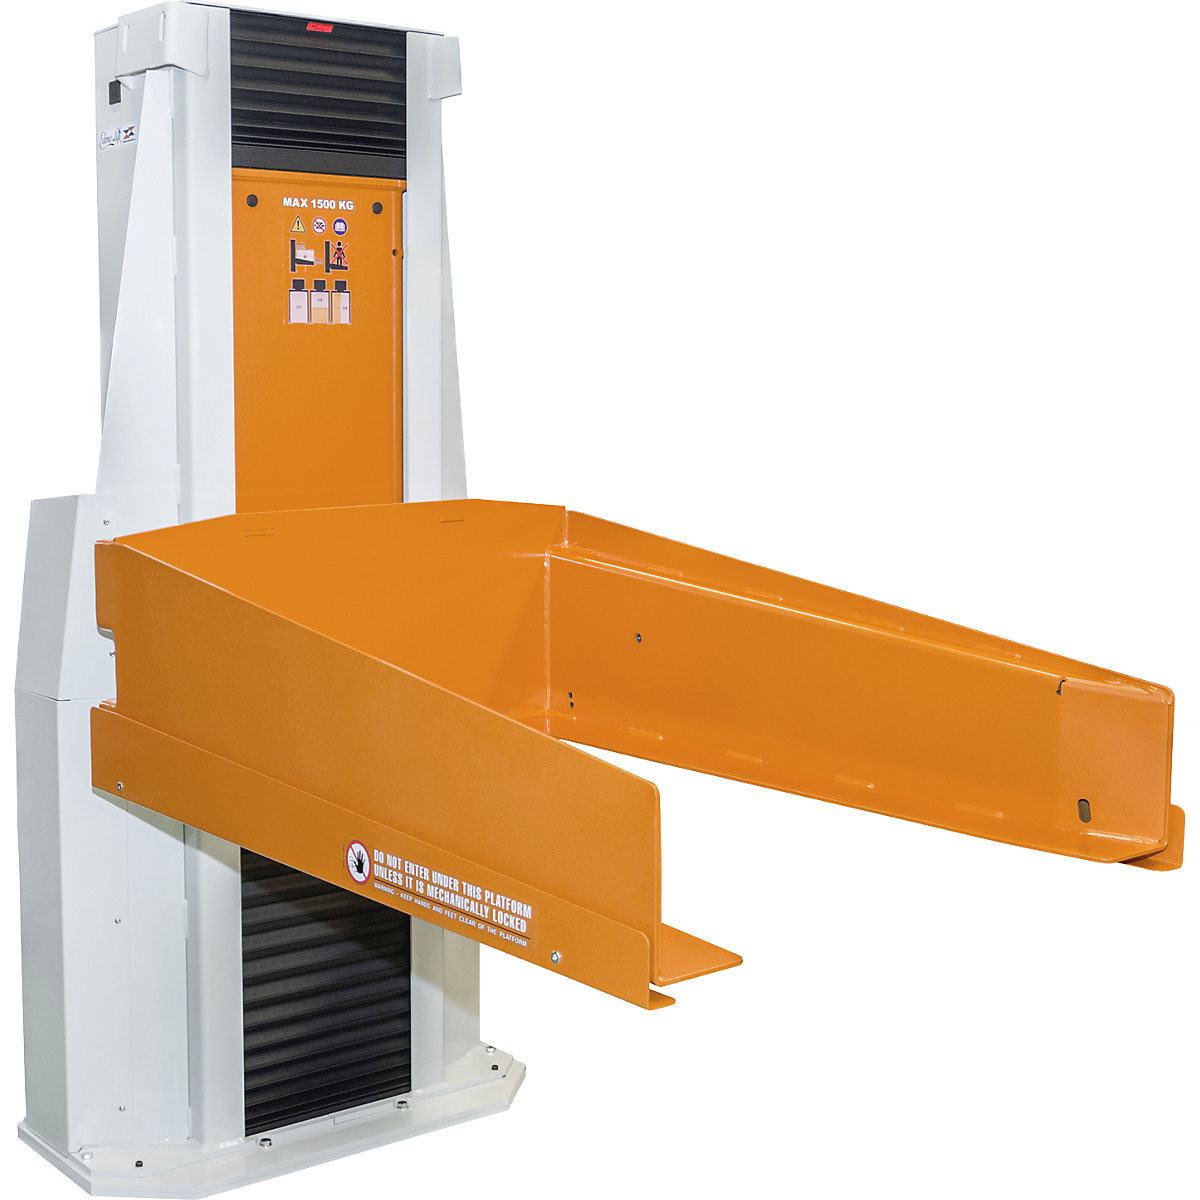 Pallet lifter – Edmolift, no tilt function, lifting range 50 – 930 mm, max. load 1500 kg